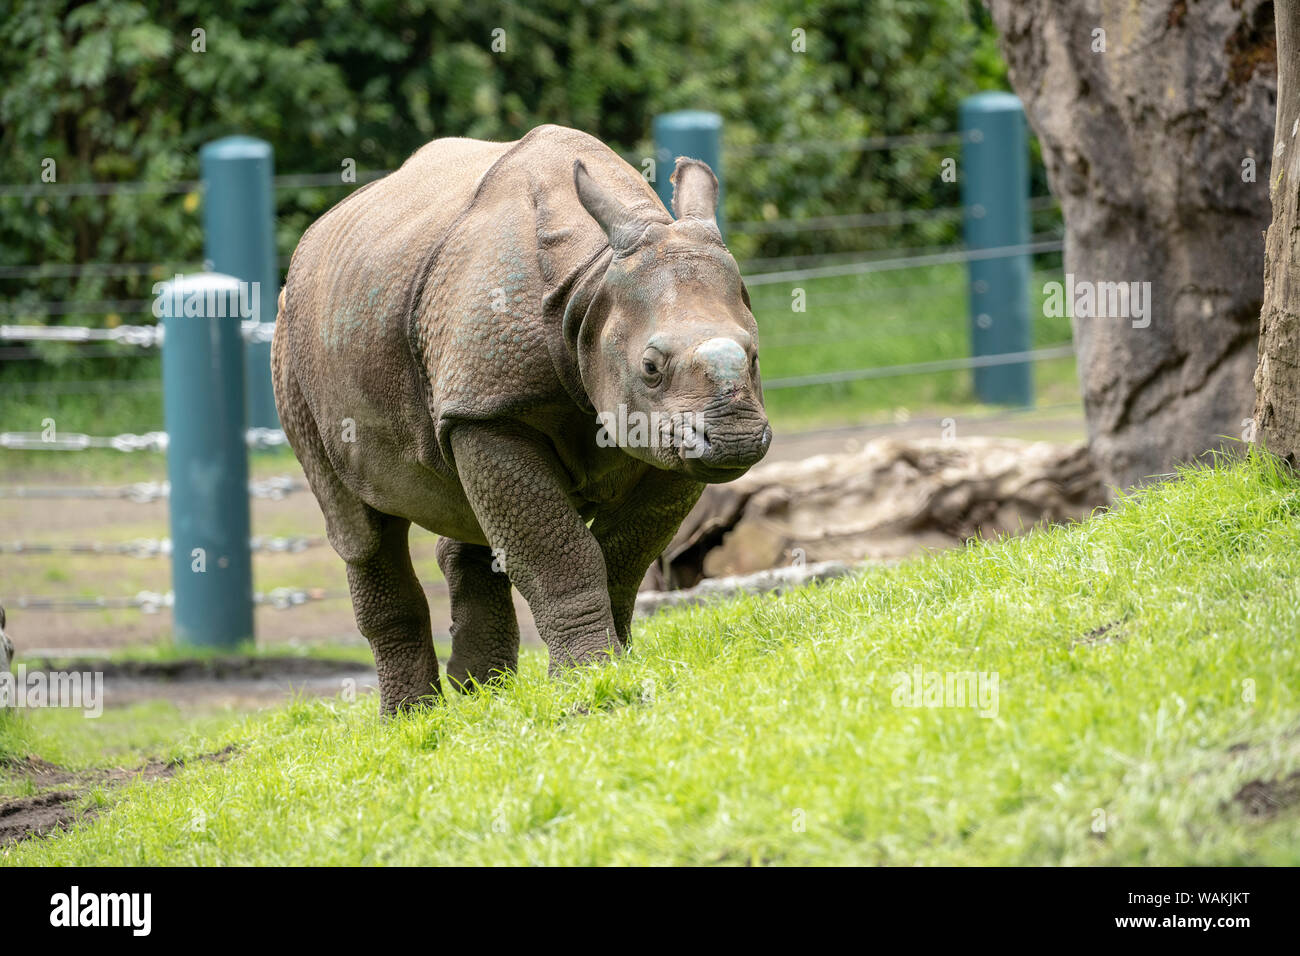 Seattle, Washington State, USA. Taj, a 17 mois rhinocéros à une corne, marcher dans sa nouvelle maison du Woodland Park Zoo. (Usage éditorial uniquement) Banque D'Images